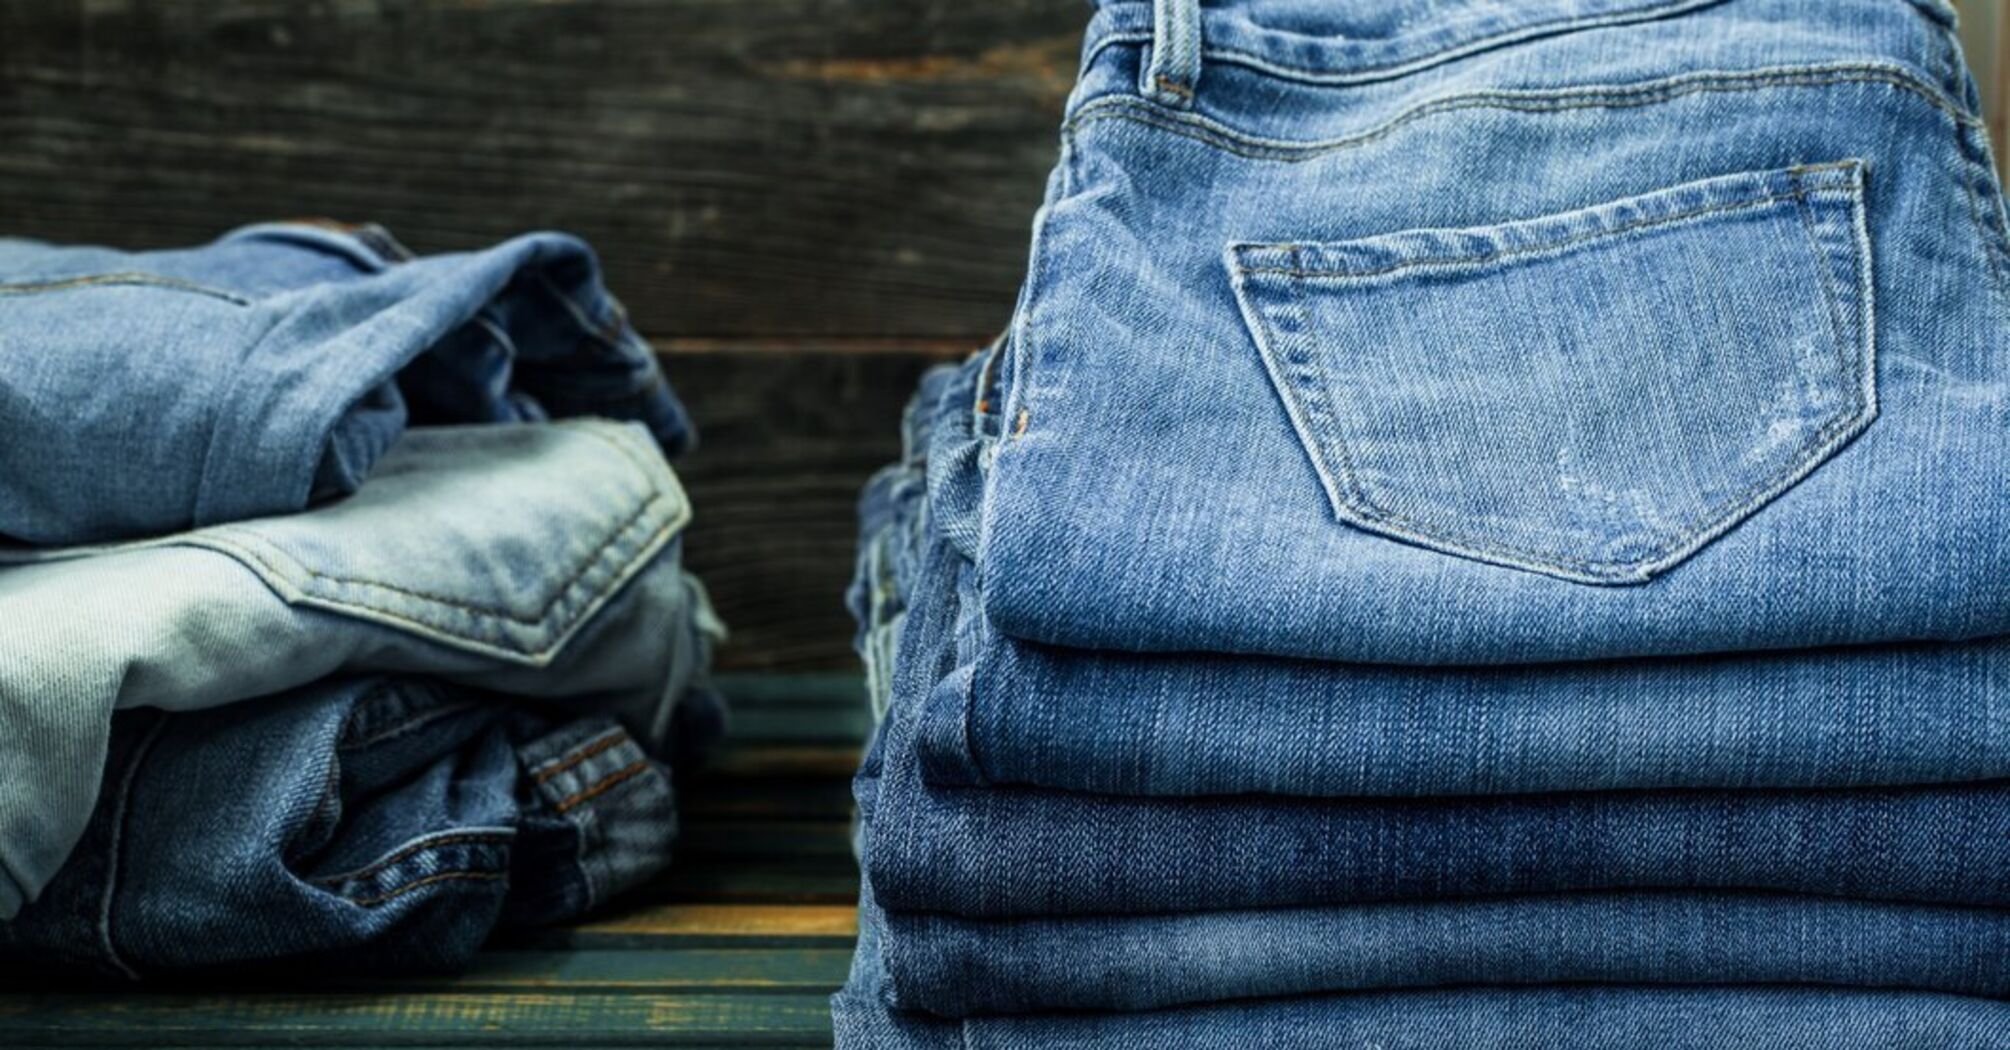 Как правильно стирать джинсы: 4 совета от экспертов